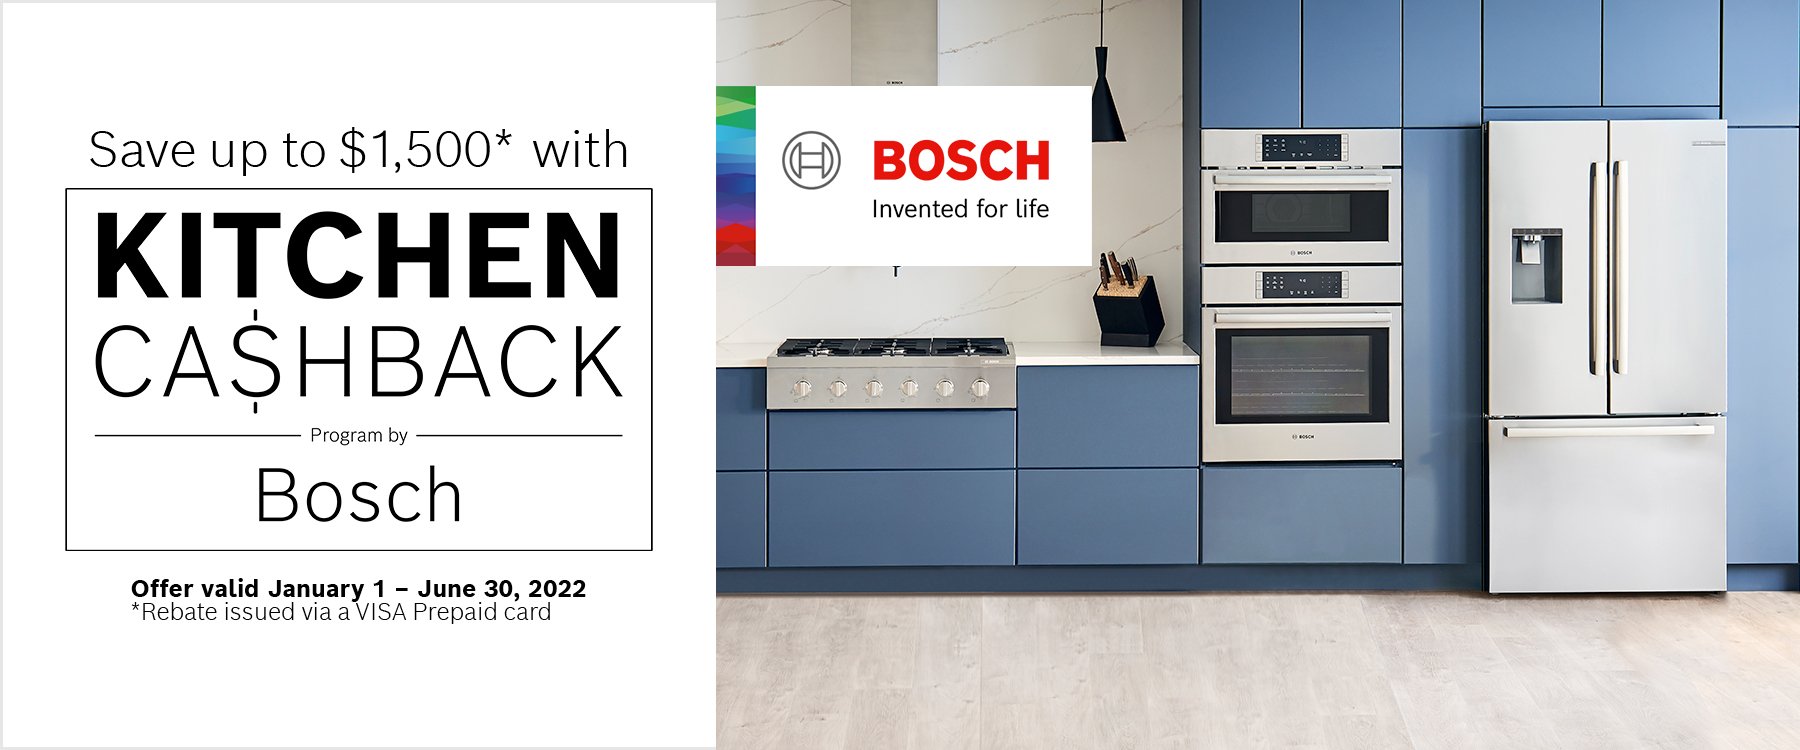 Bosch Kitchen Cashback